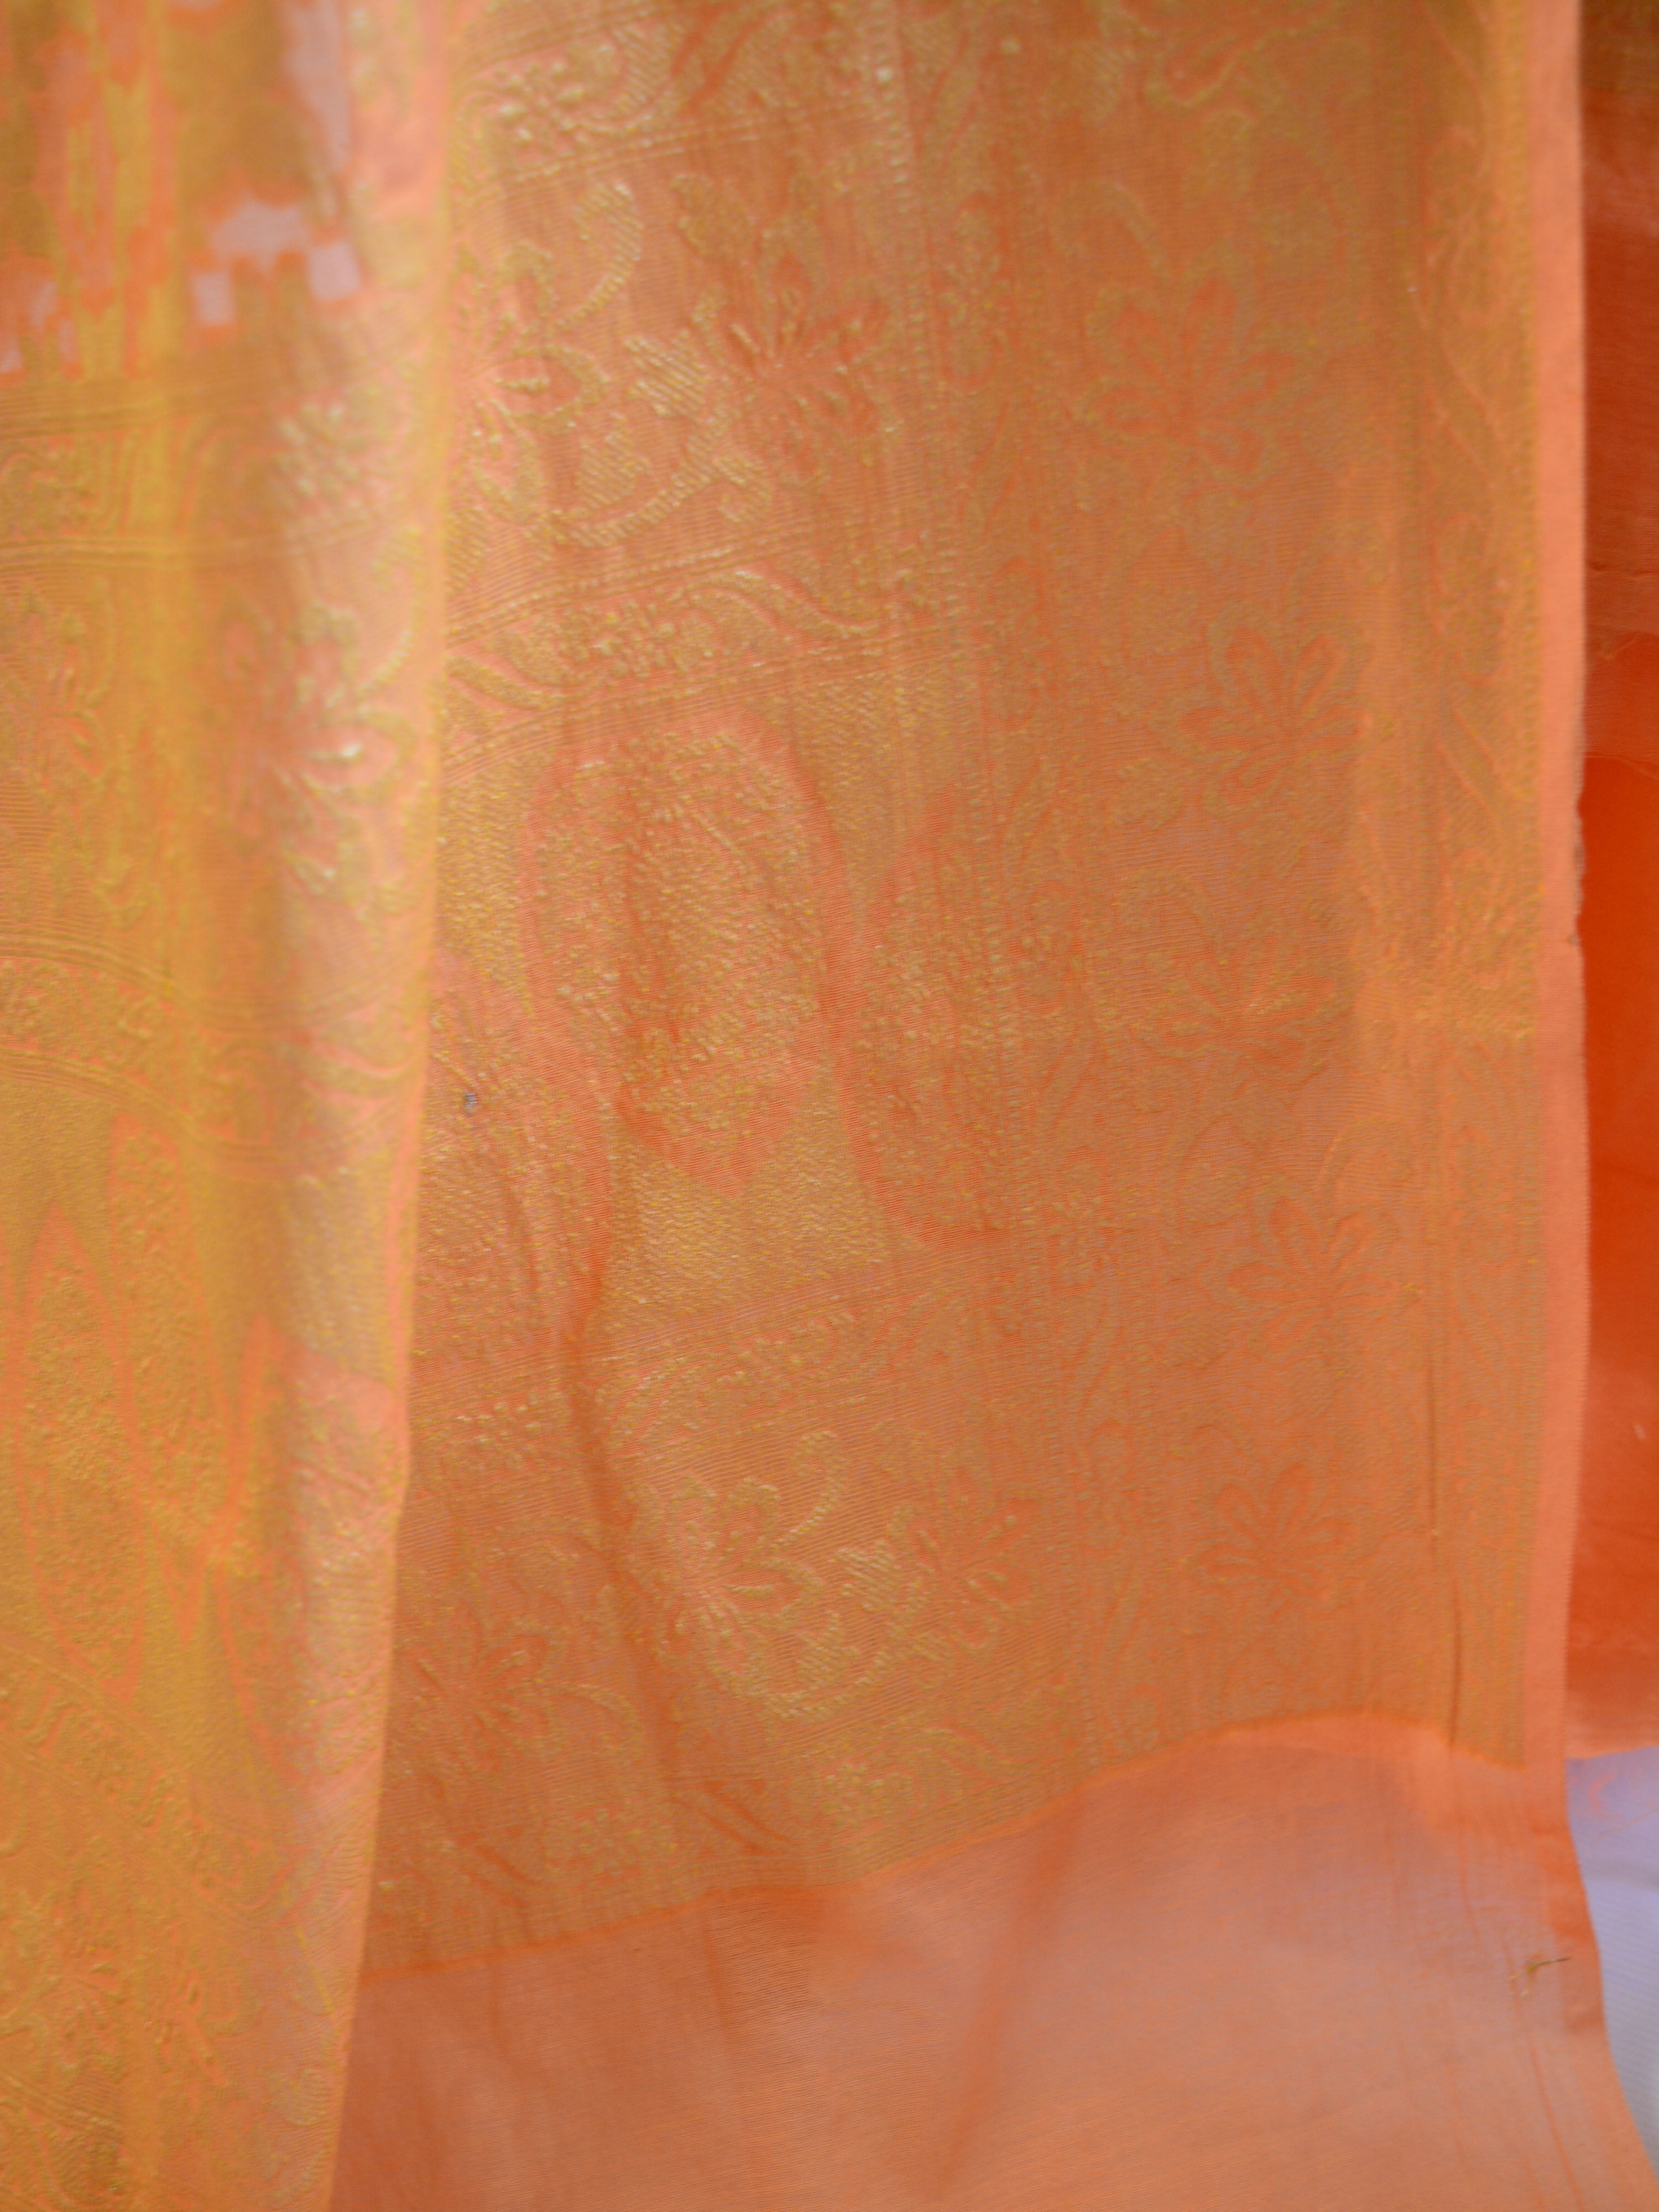 Banarasee Salwar Kameez Cotton Silk Gold Zari Buti Woven Fabric-Orange